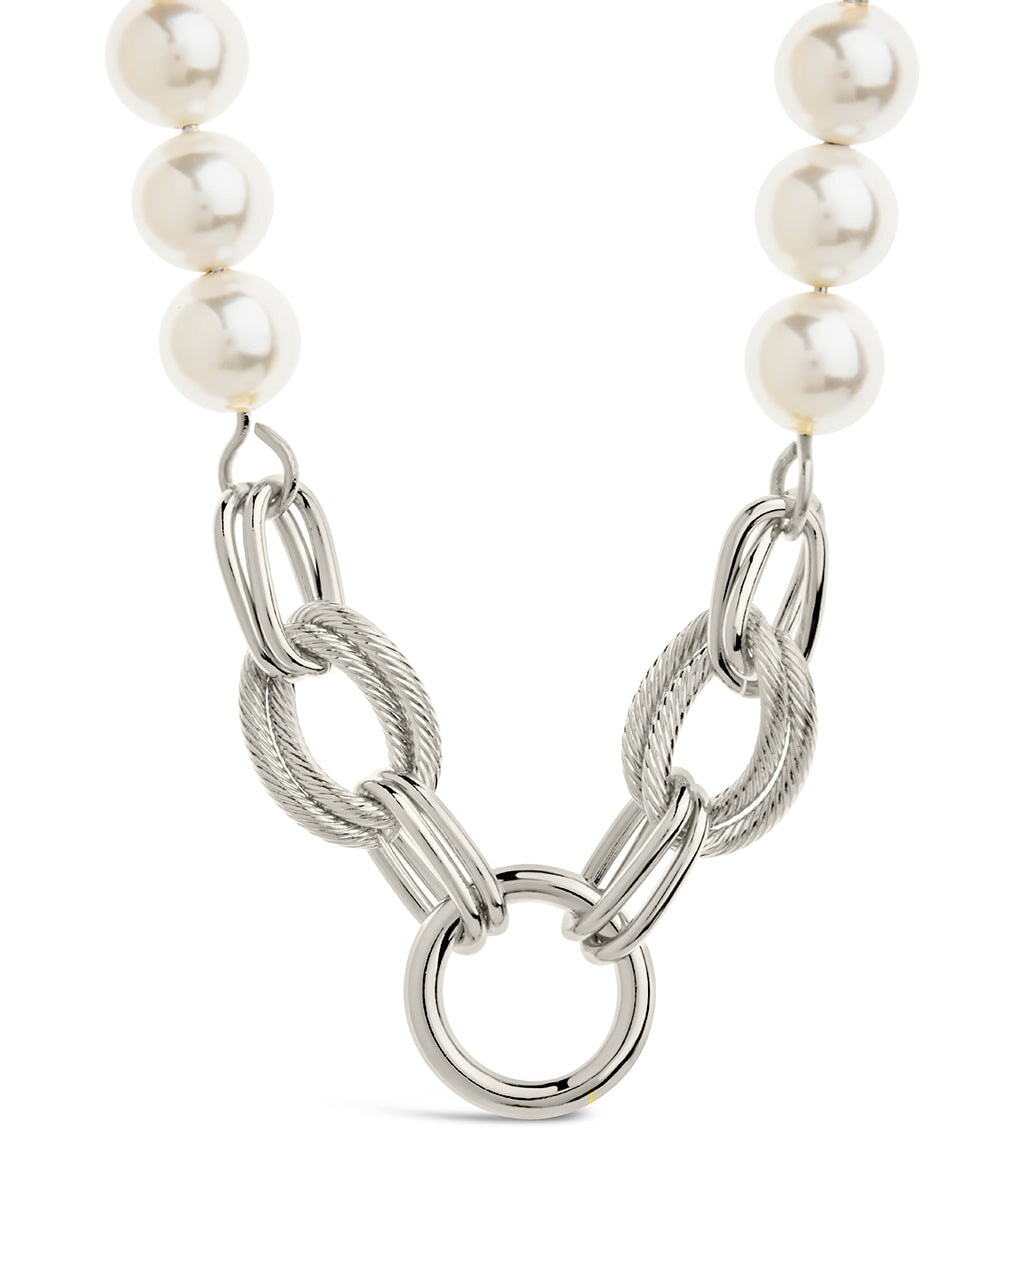 Ivanna Pearl Necklace Bracelet Sterling Forever 